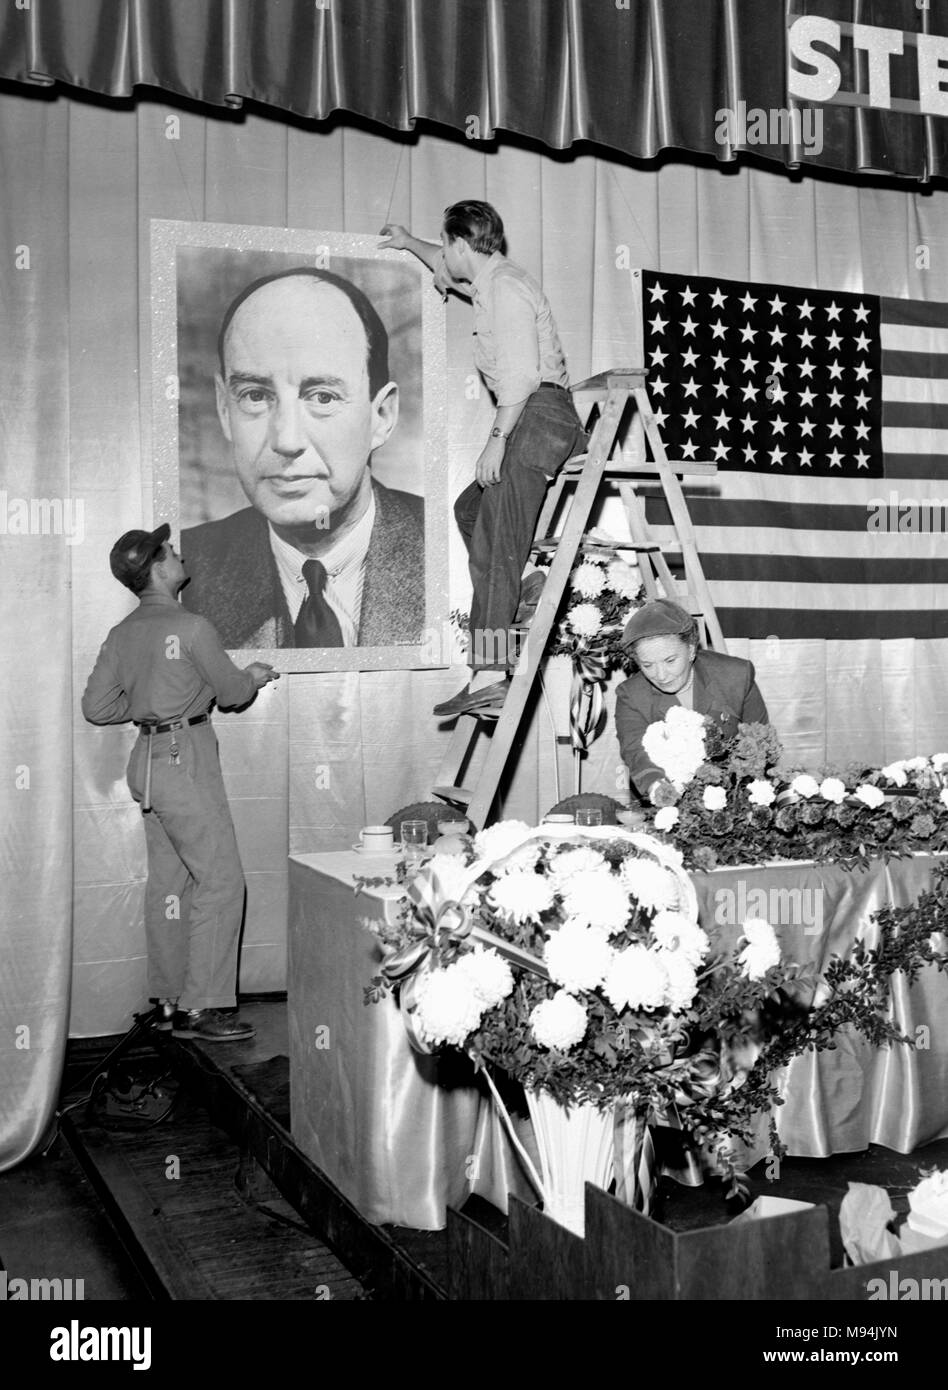 Eine Kampagne, die Lage ist vorbereitet für eine Rallye durch die demokratischen Präsidentschaftskandidaten Adlai Stevenson in Kansas City, Missouri im Jahr 1952. Stockfoto